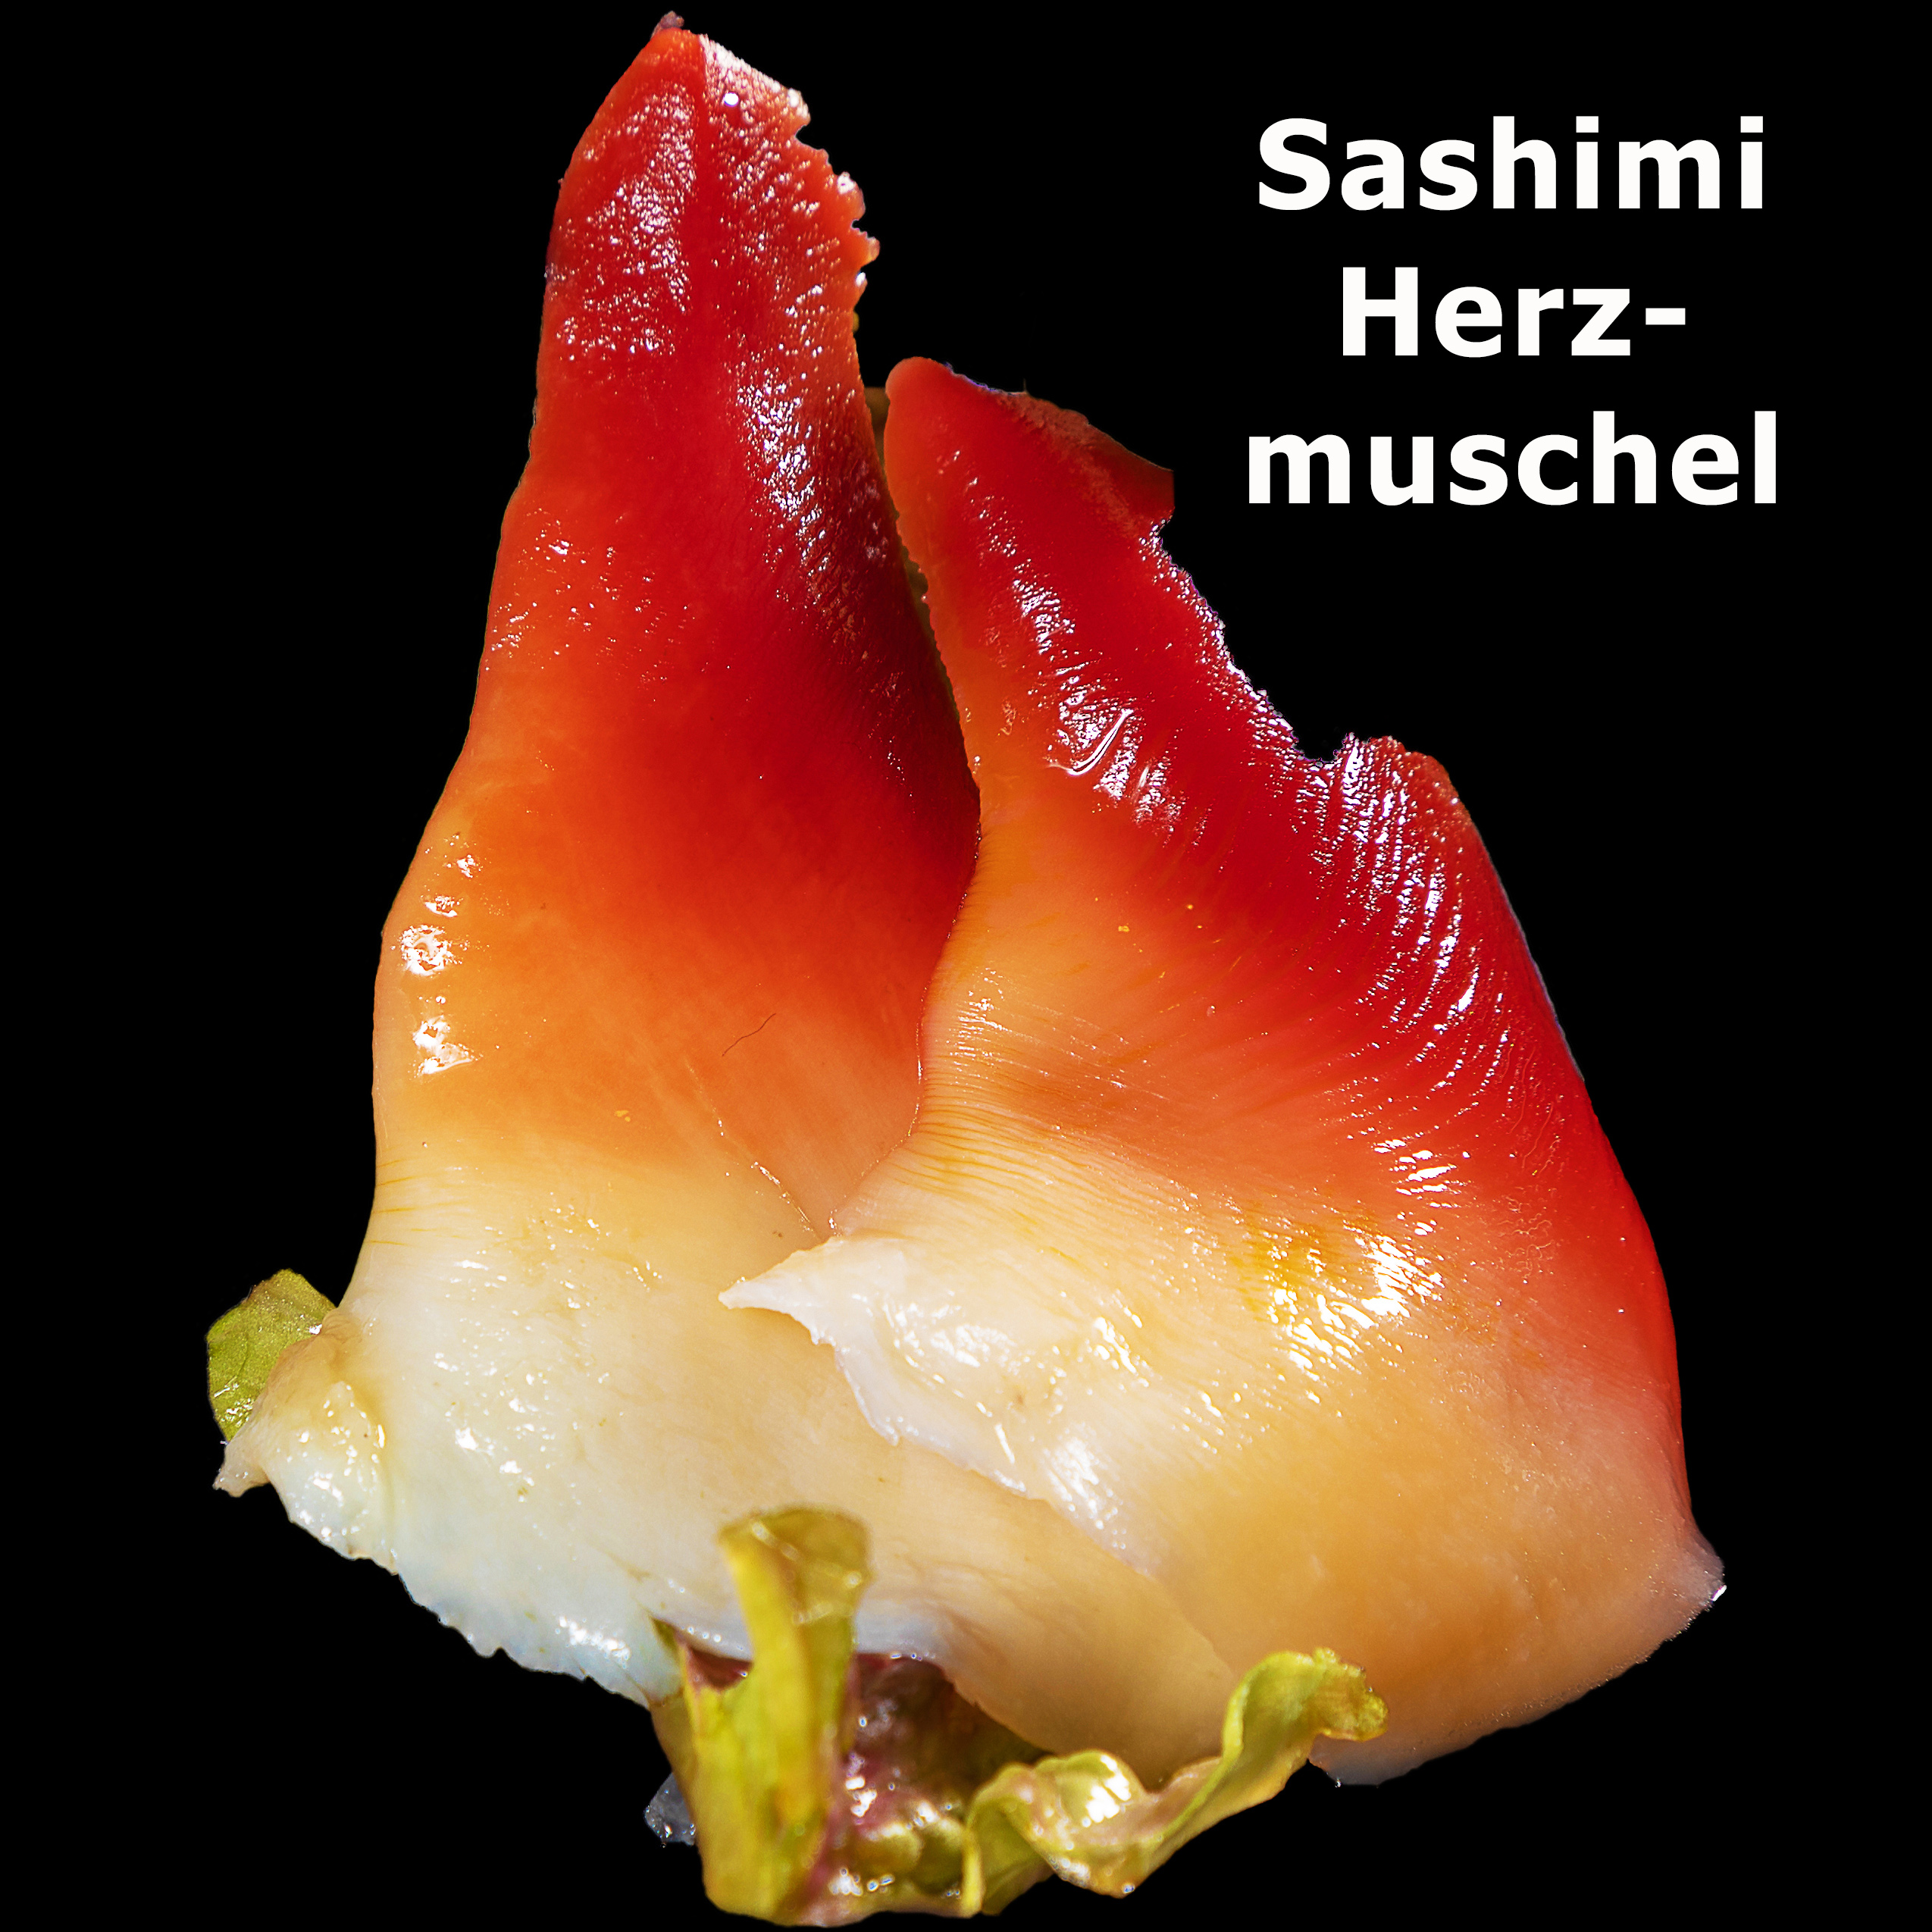 72. Sashimi Herzmuschel